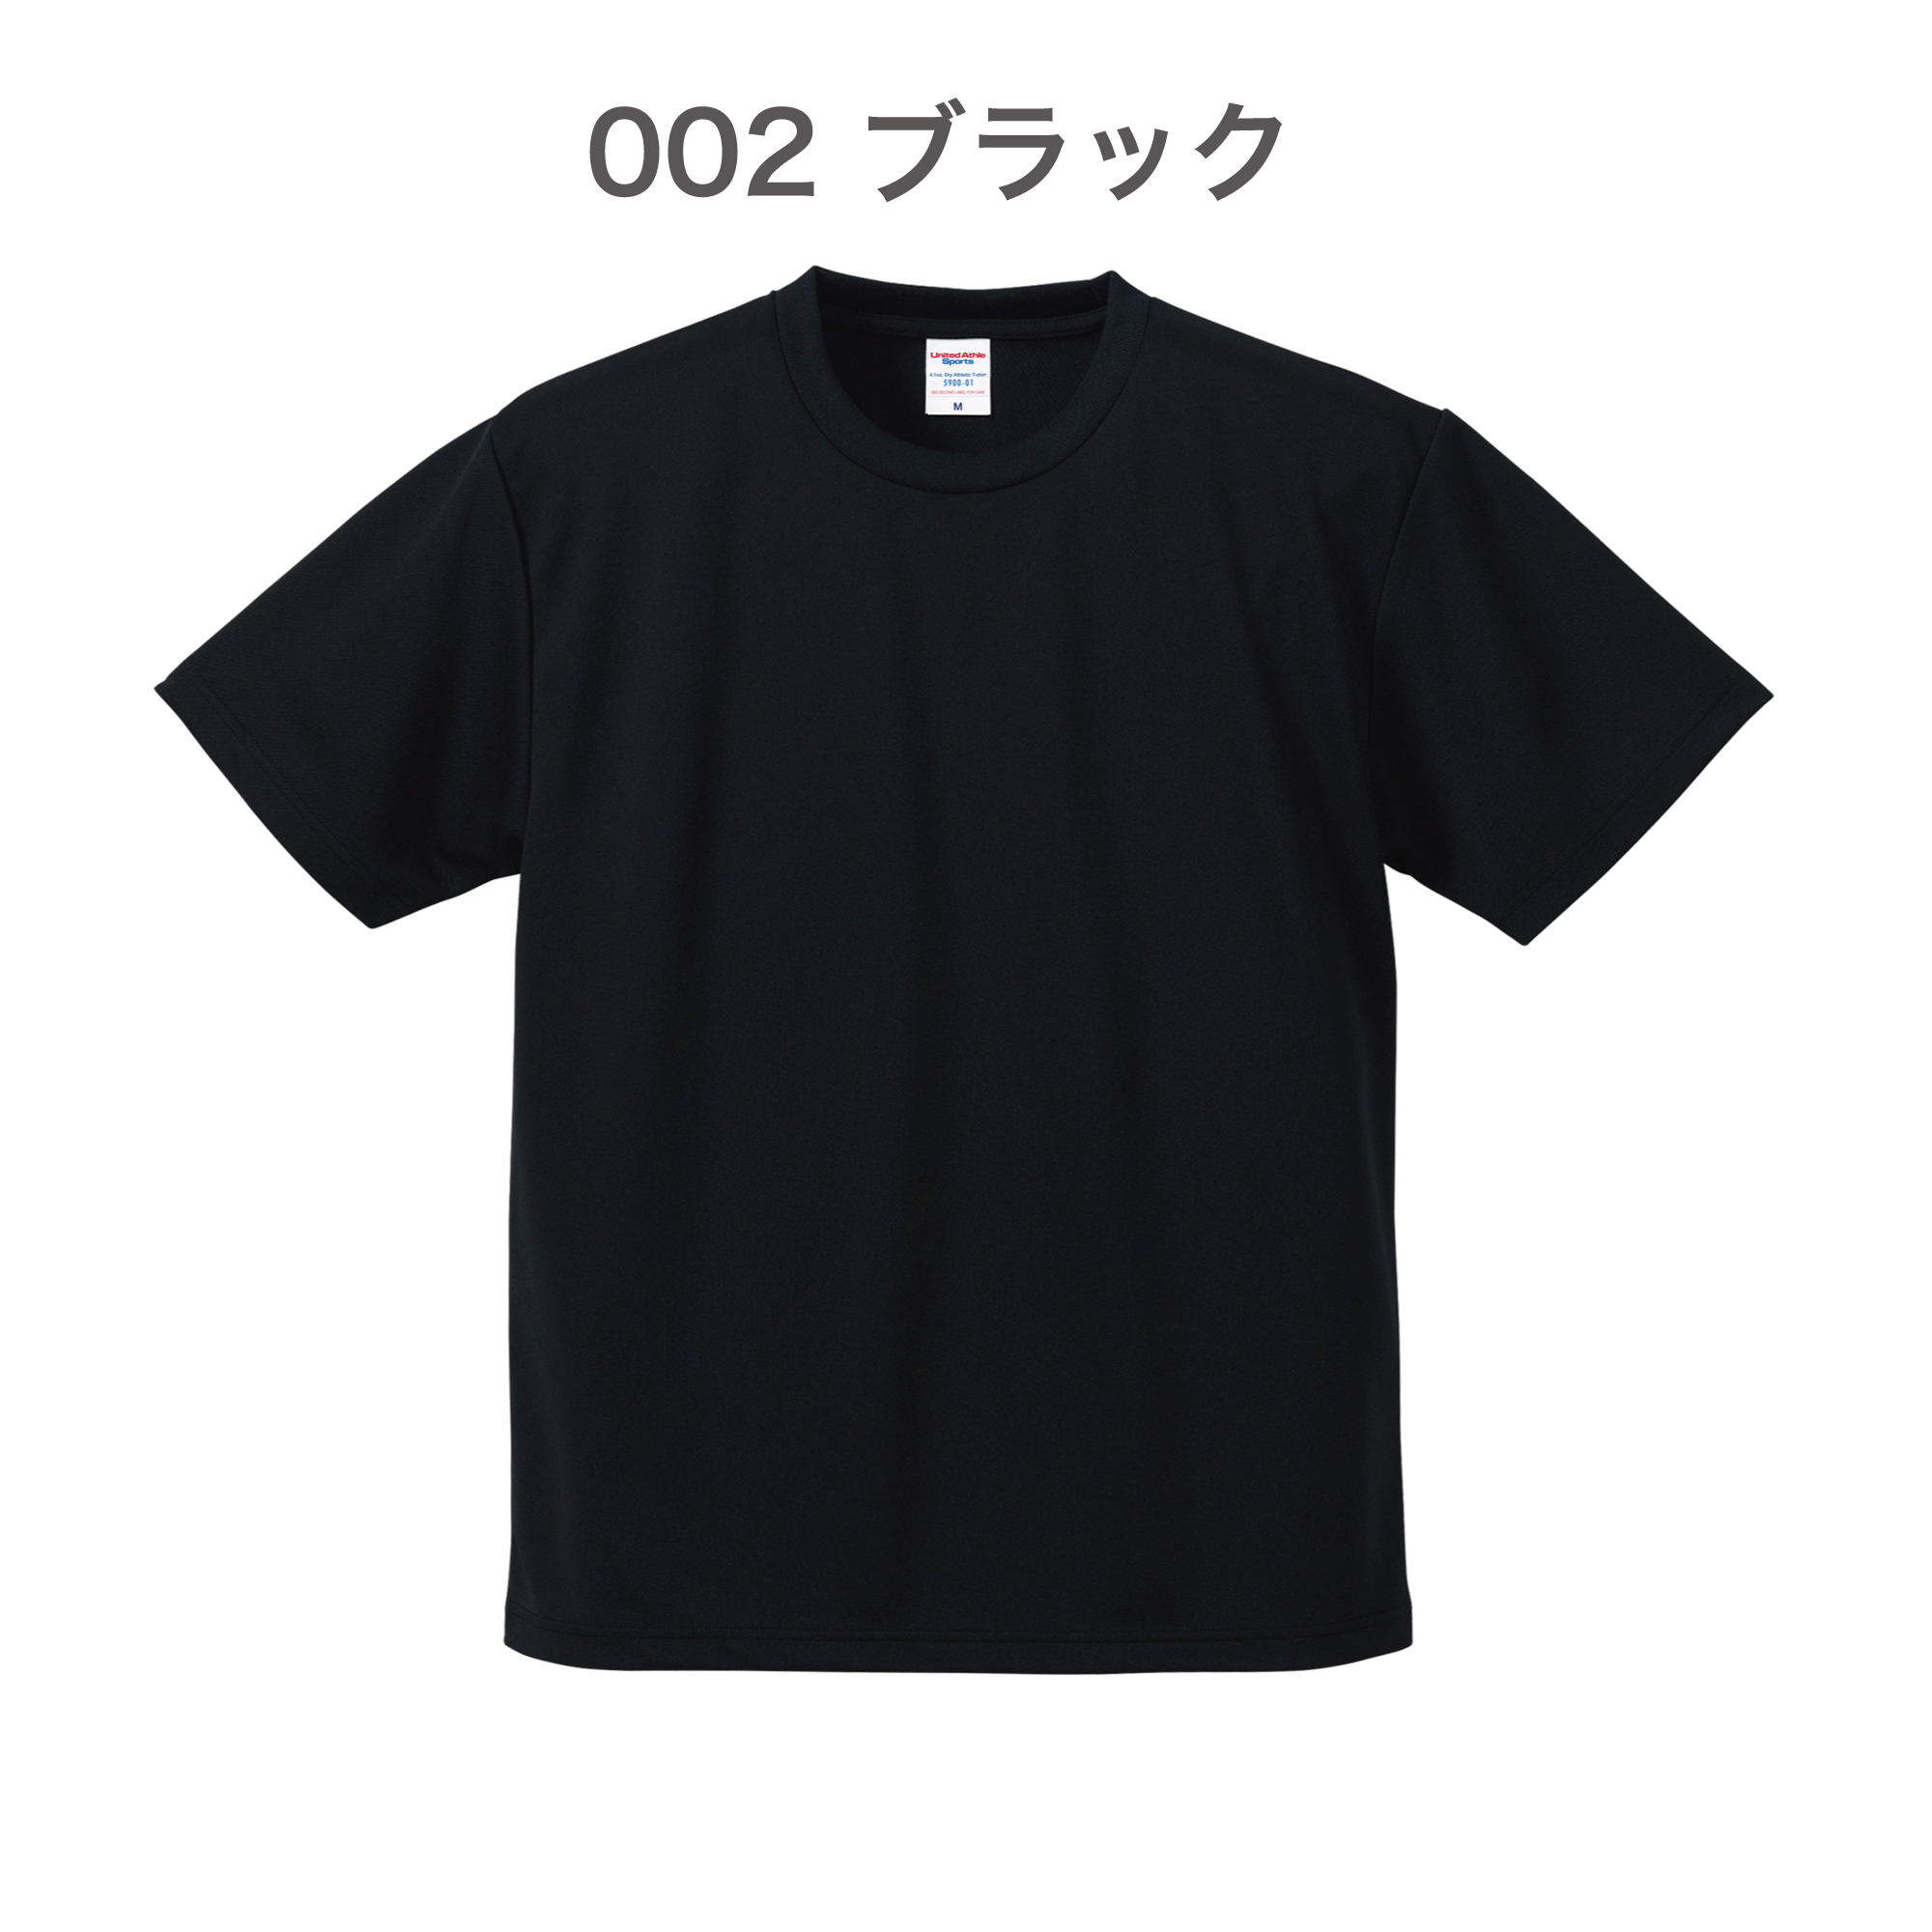 002-ブラック